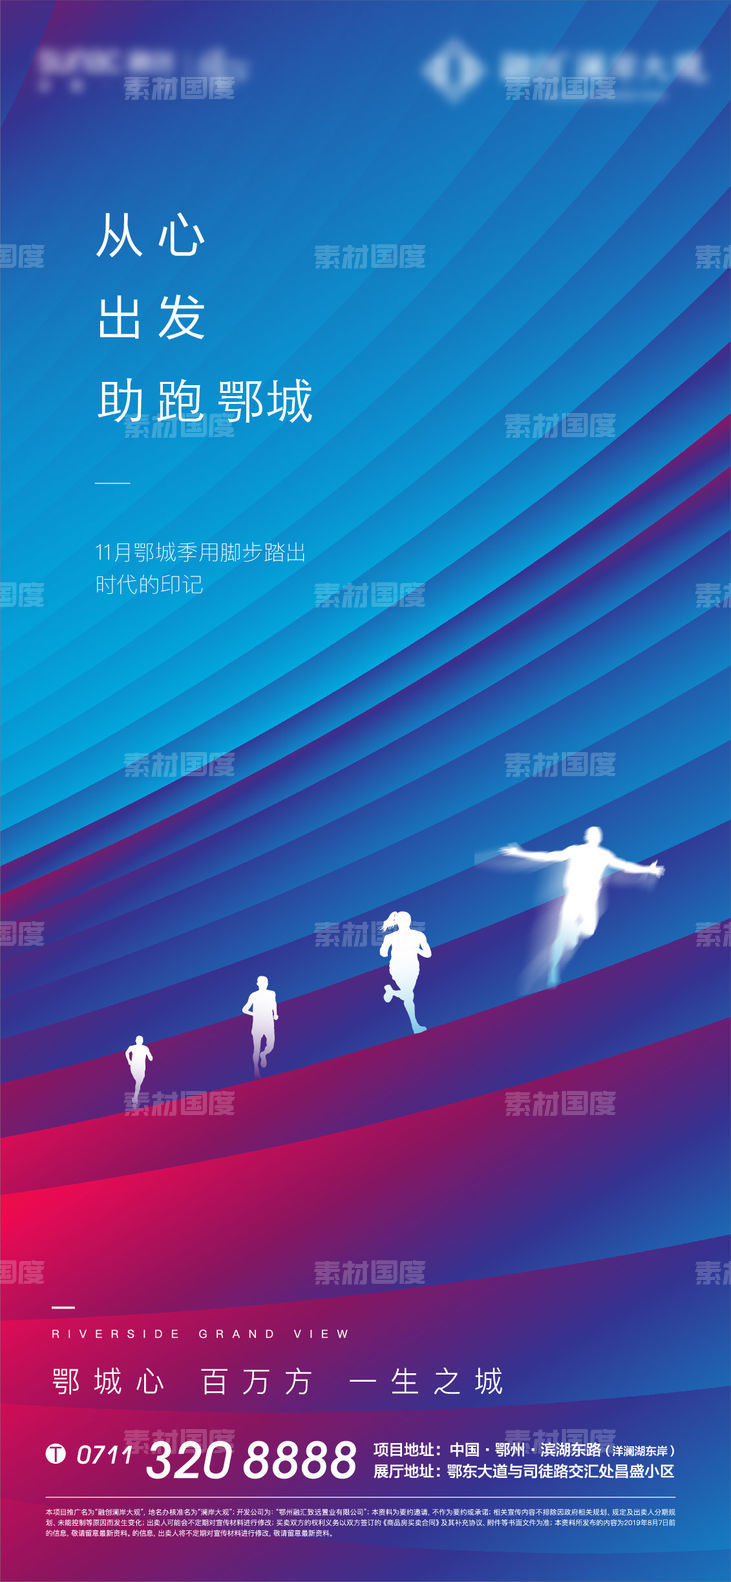 马拉松 地产 蓝色 质感 跑步 奥运 发布会